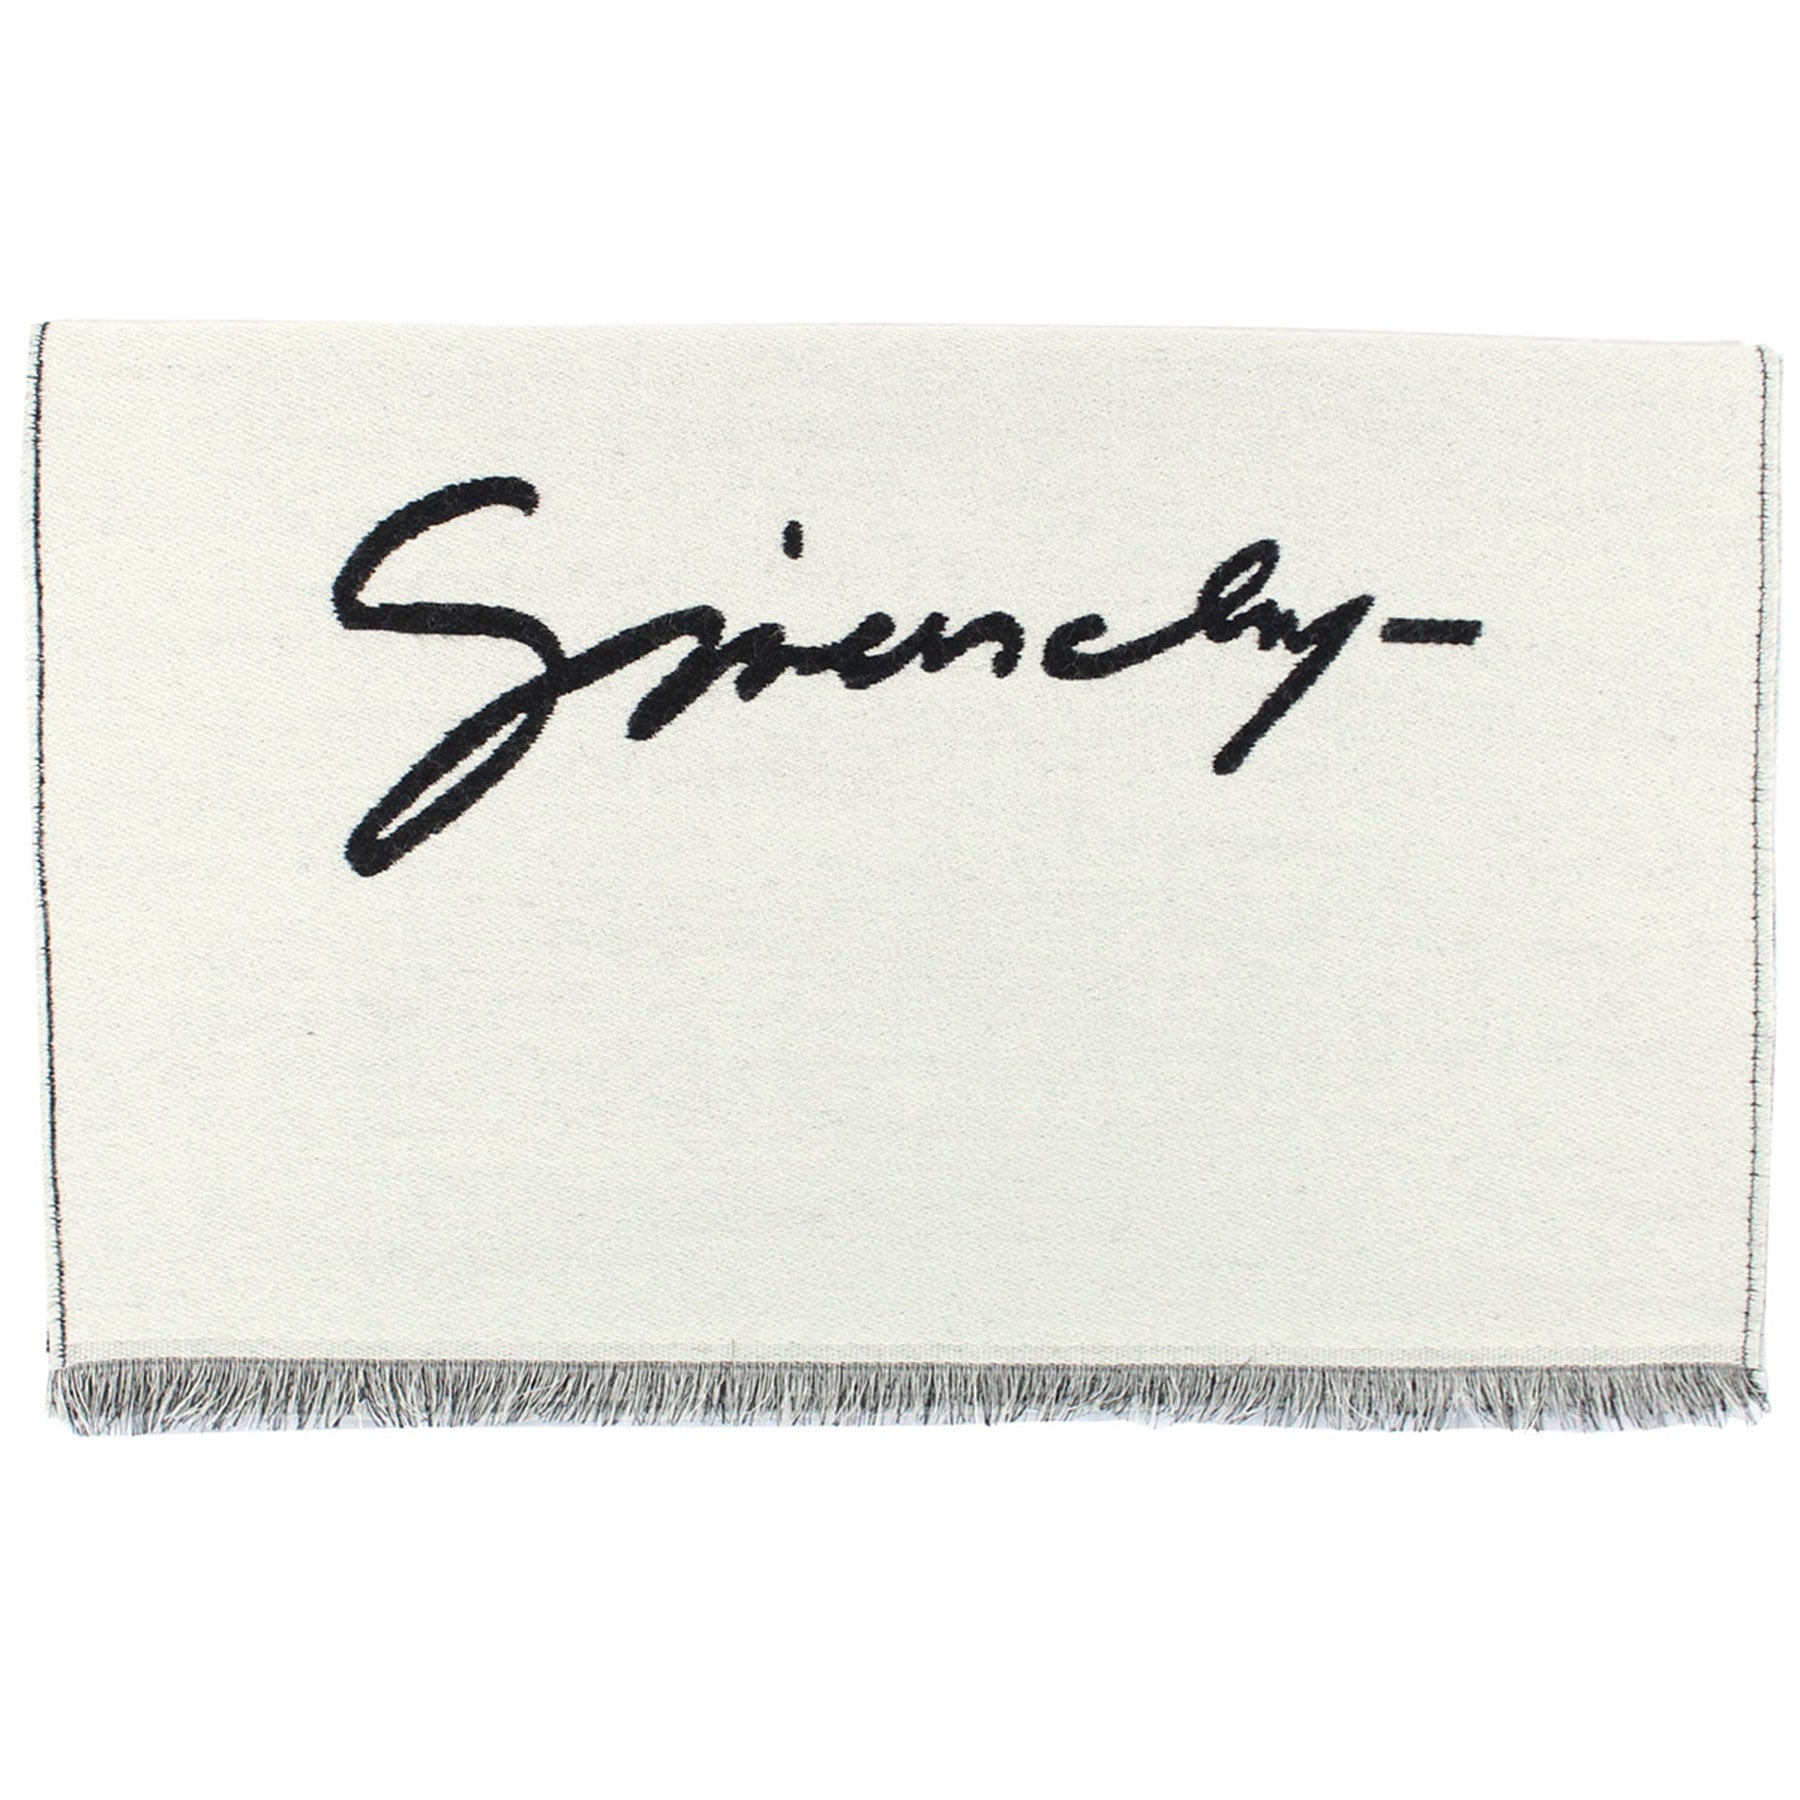 Givenchy Scarf White Black Logo Design - Wool Silk Shawl